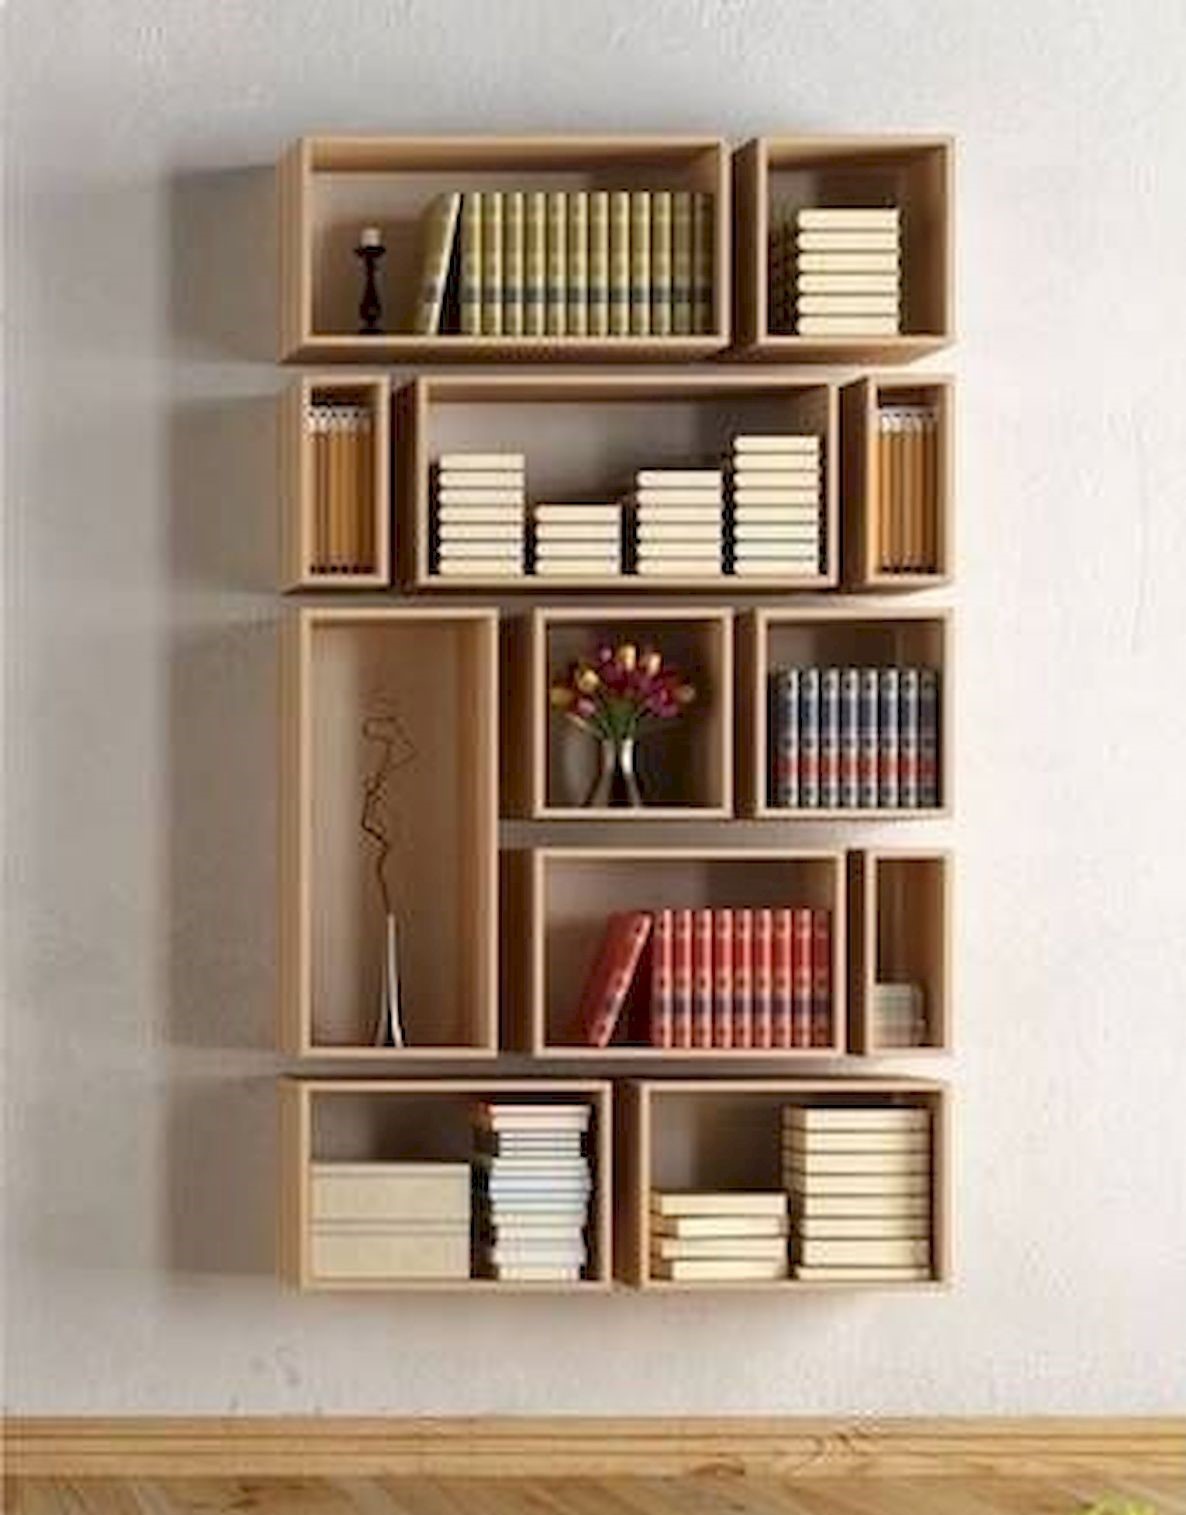 50 Amazing Diy Bookshelf Design Ideas For Your Home